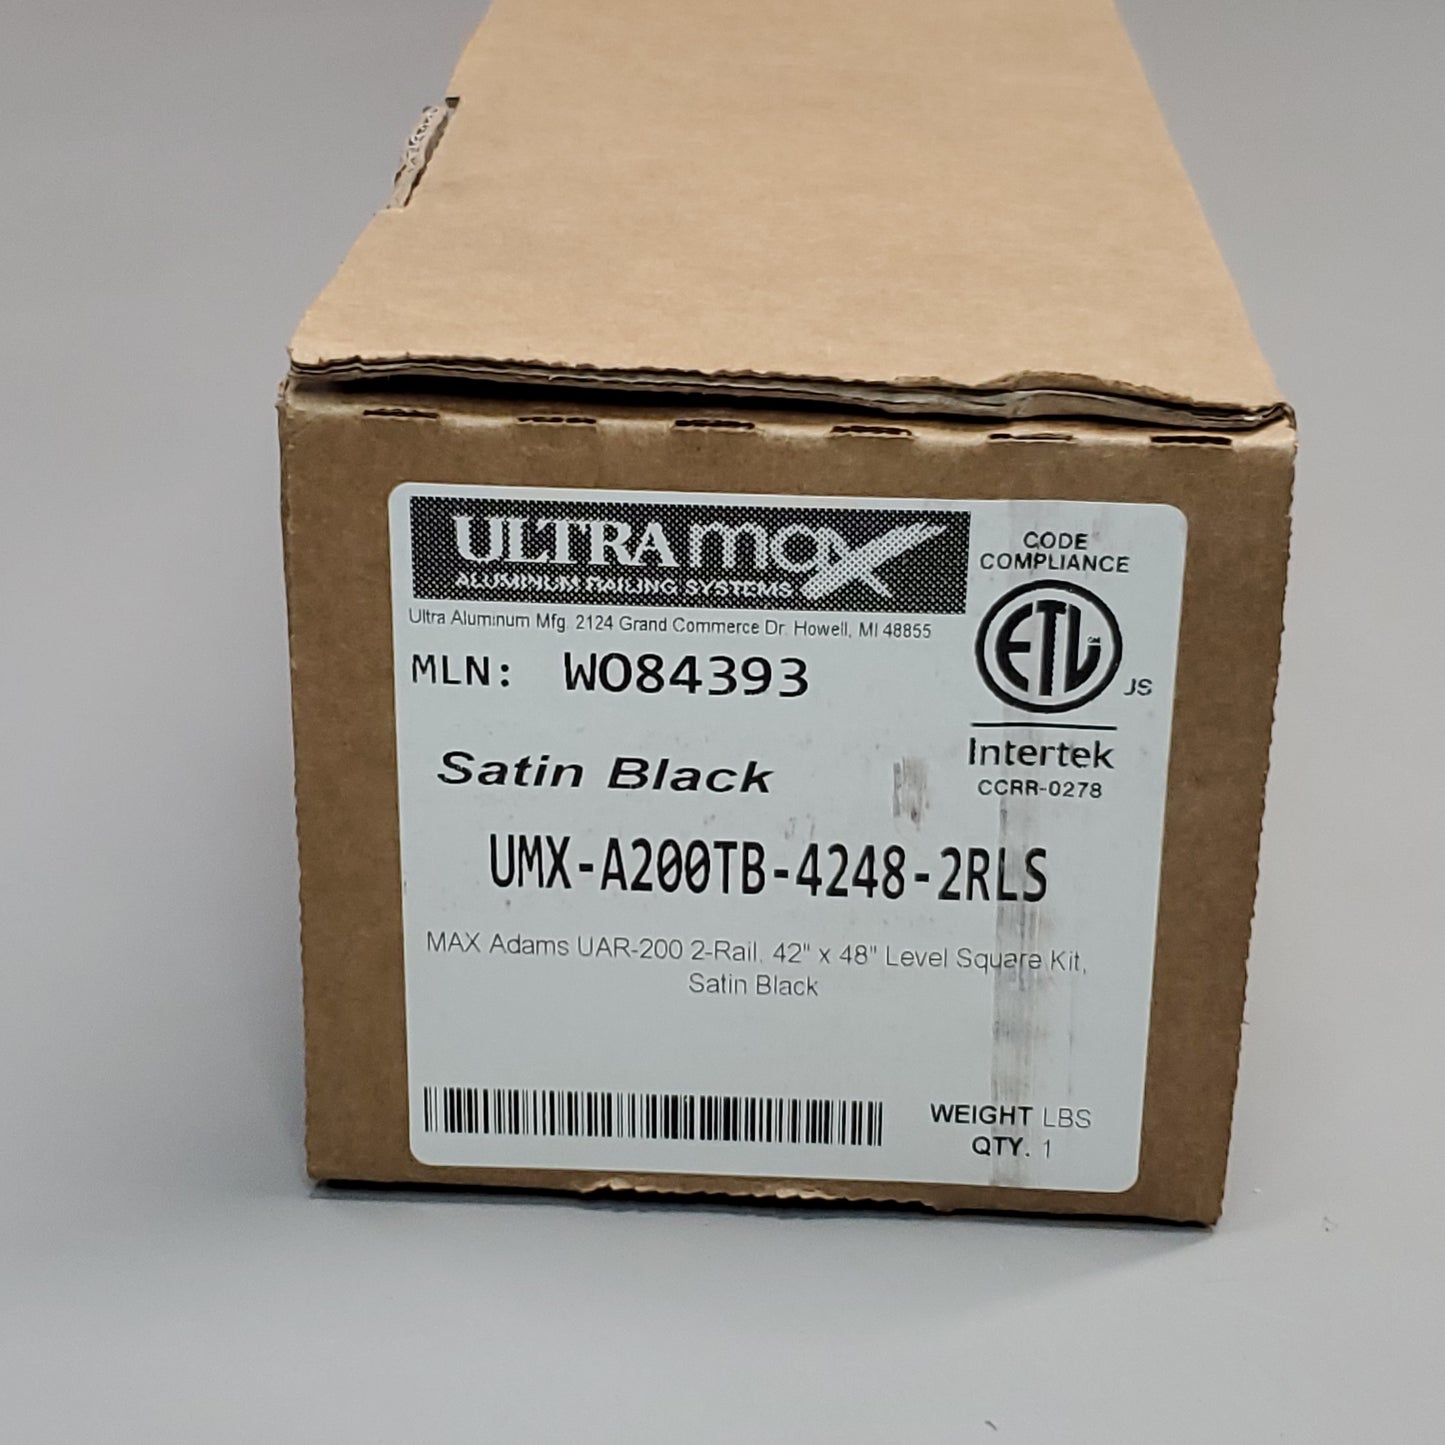 ULTRA MAX Aluminum Railing System MAX Adams 2-Rail 42"X48" Satin Black (New)